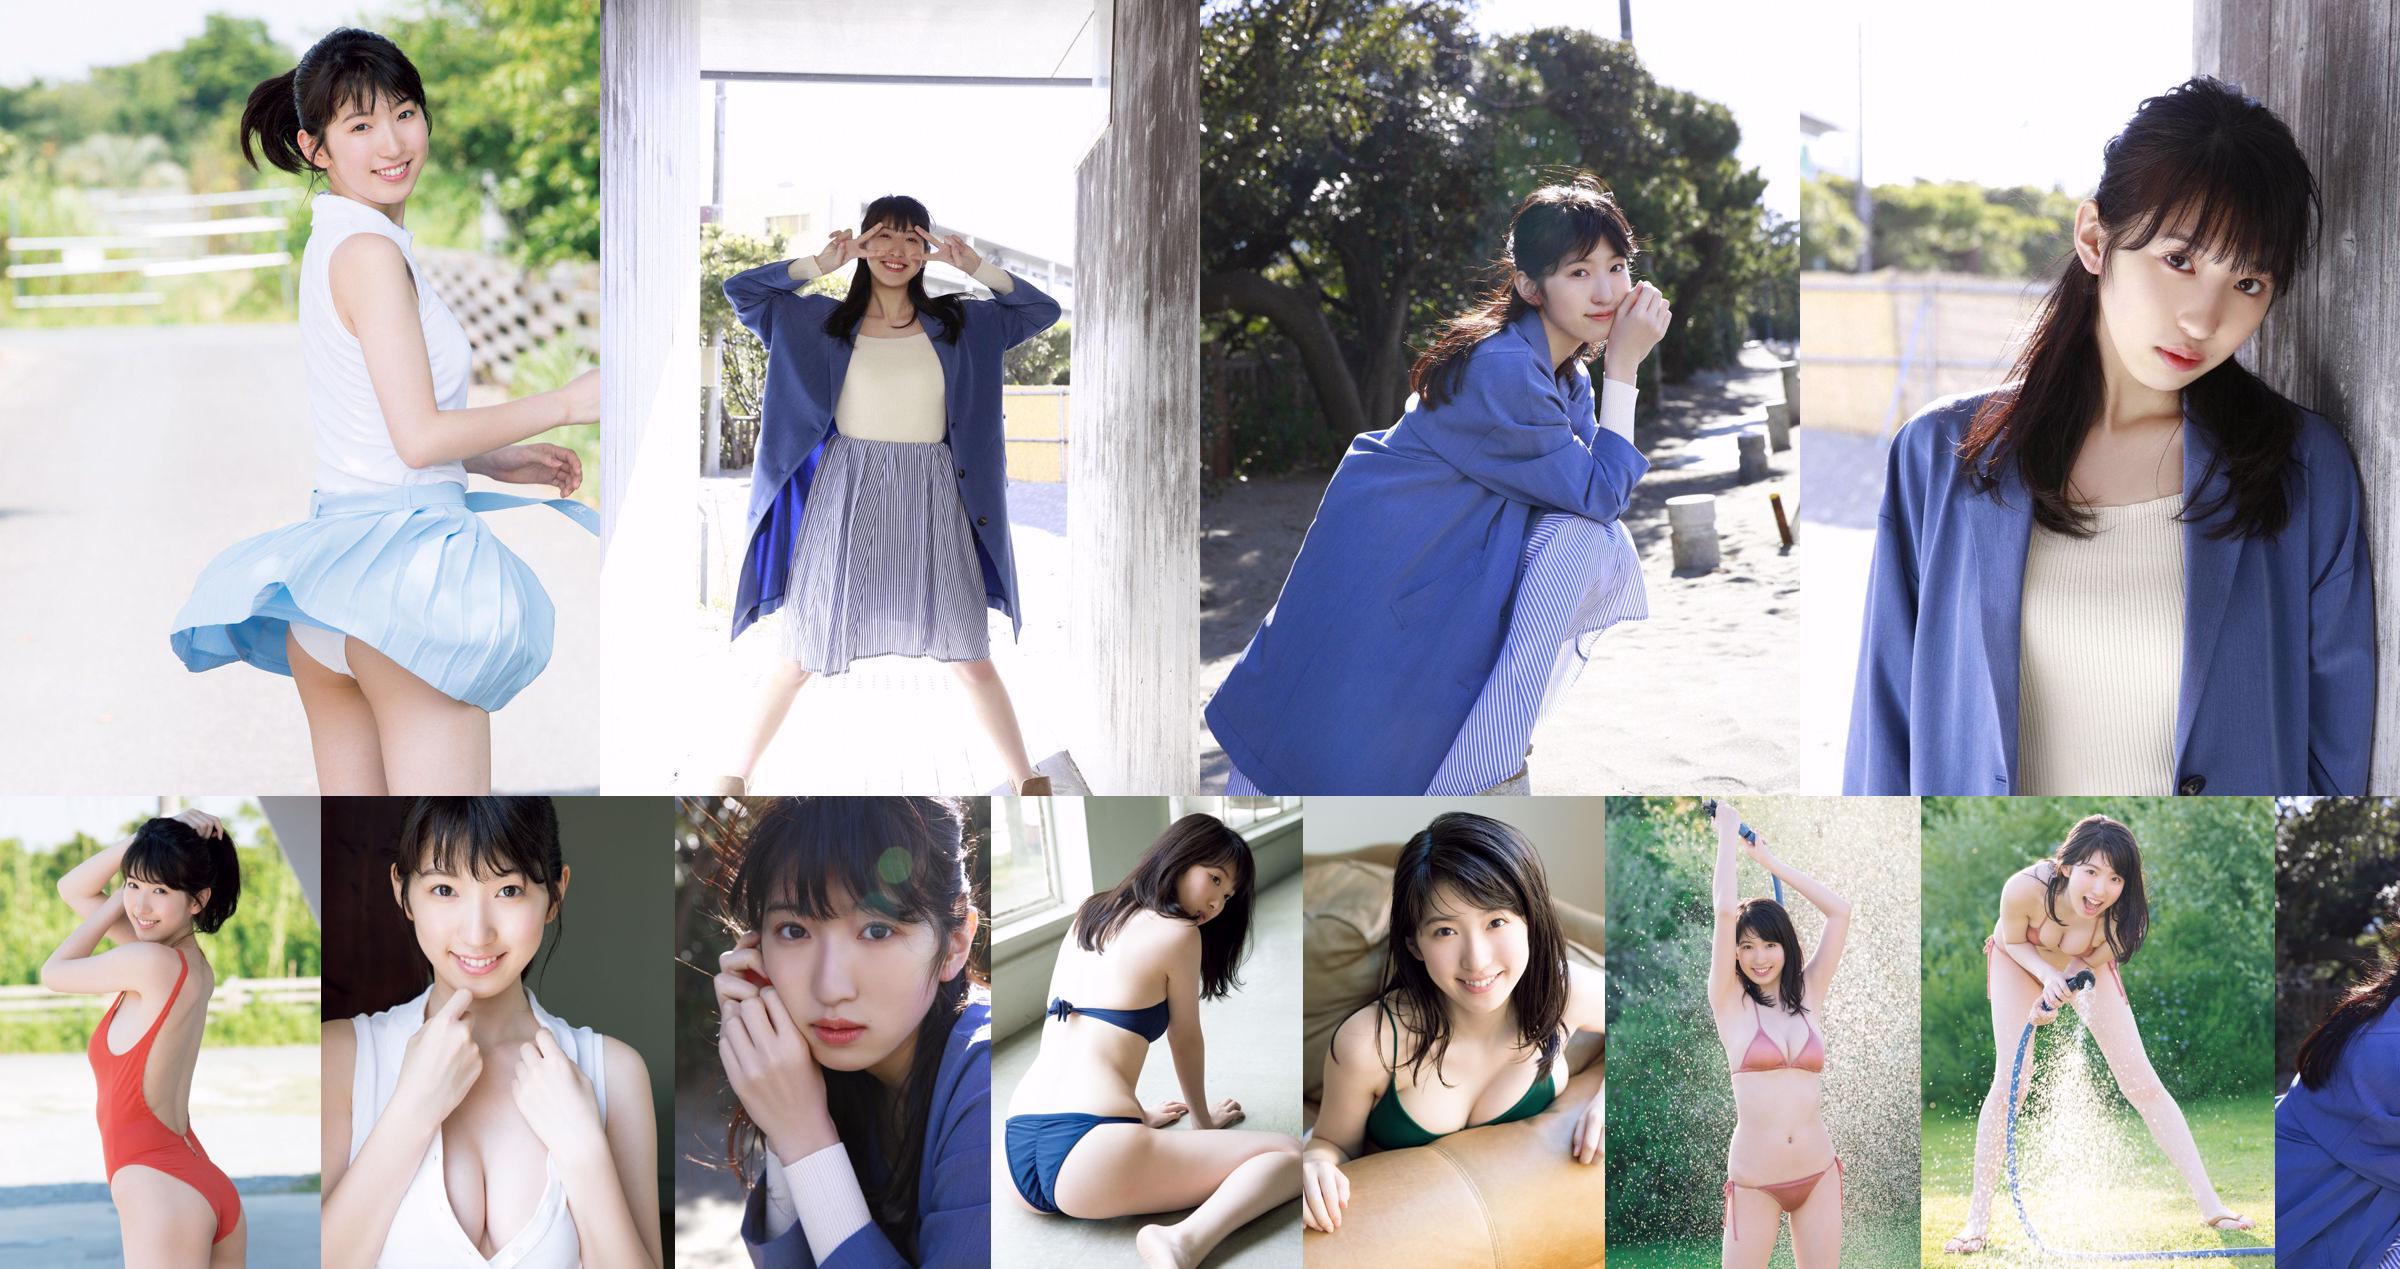 [THỨ SÁU] 《Shuka Saito, 22 tuổi, cô gái 22 tuổi, độc quyền cho ra mắt bộ áo tắm độc quyền về hình ảnh đáng quý của một diễn viên lồng tiếng cho vụ nổ lớn nổi tiếng》 Ảnh No.eabd38 Trang 4